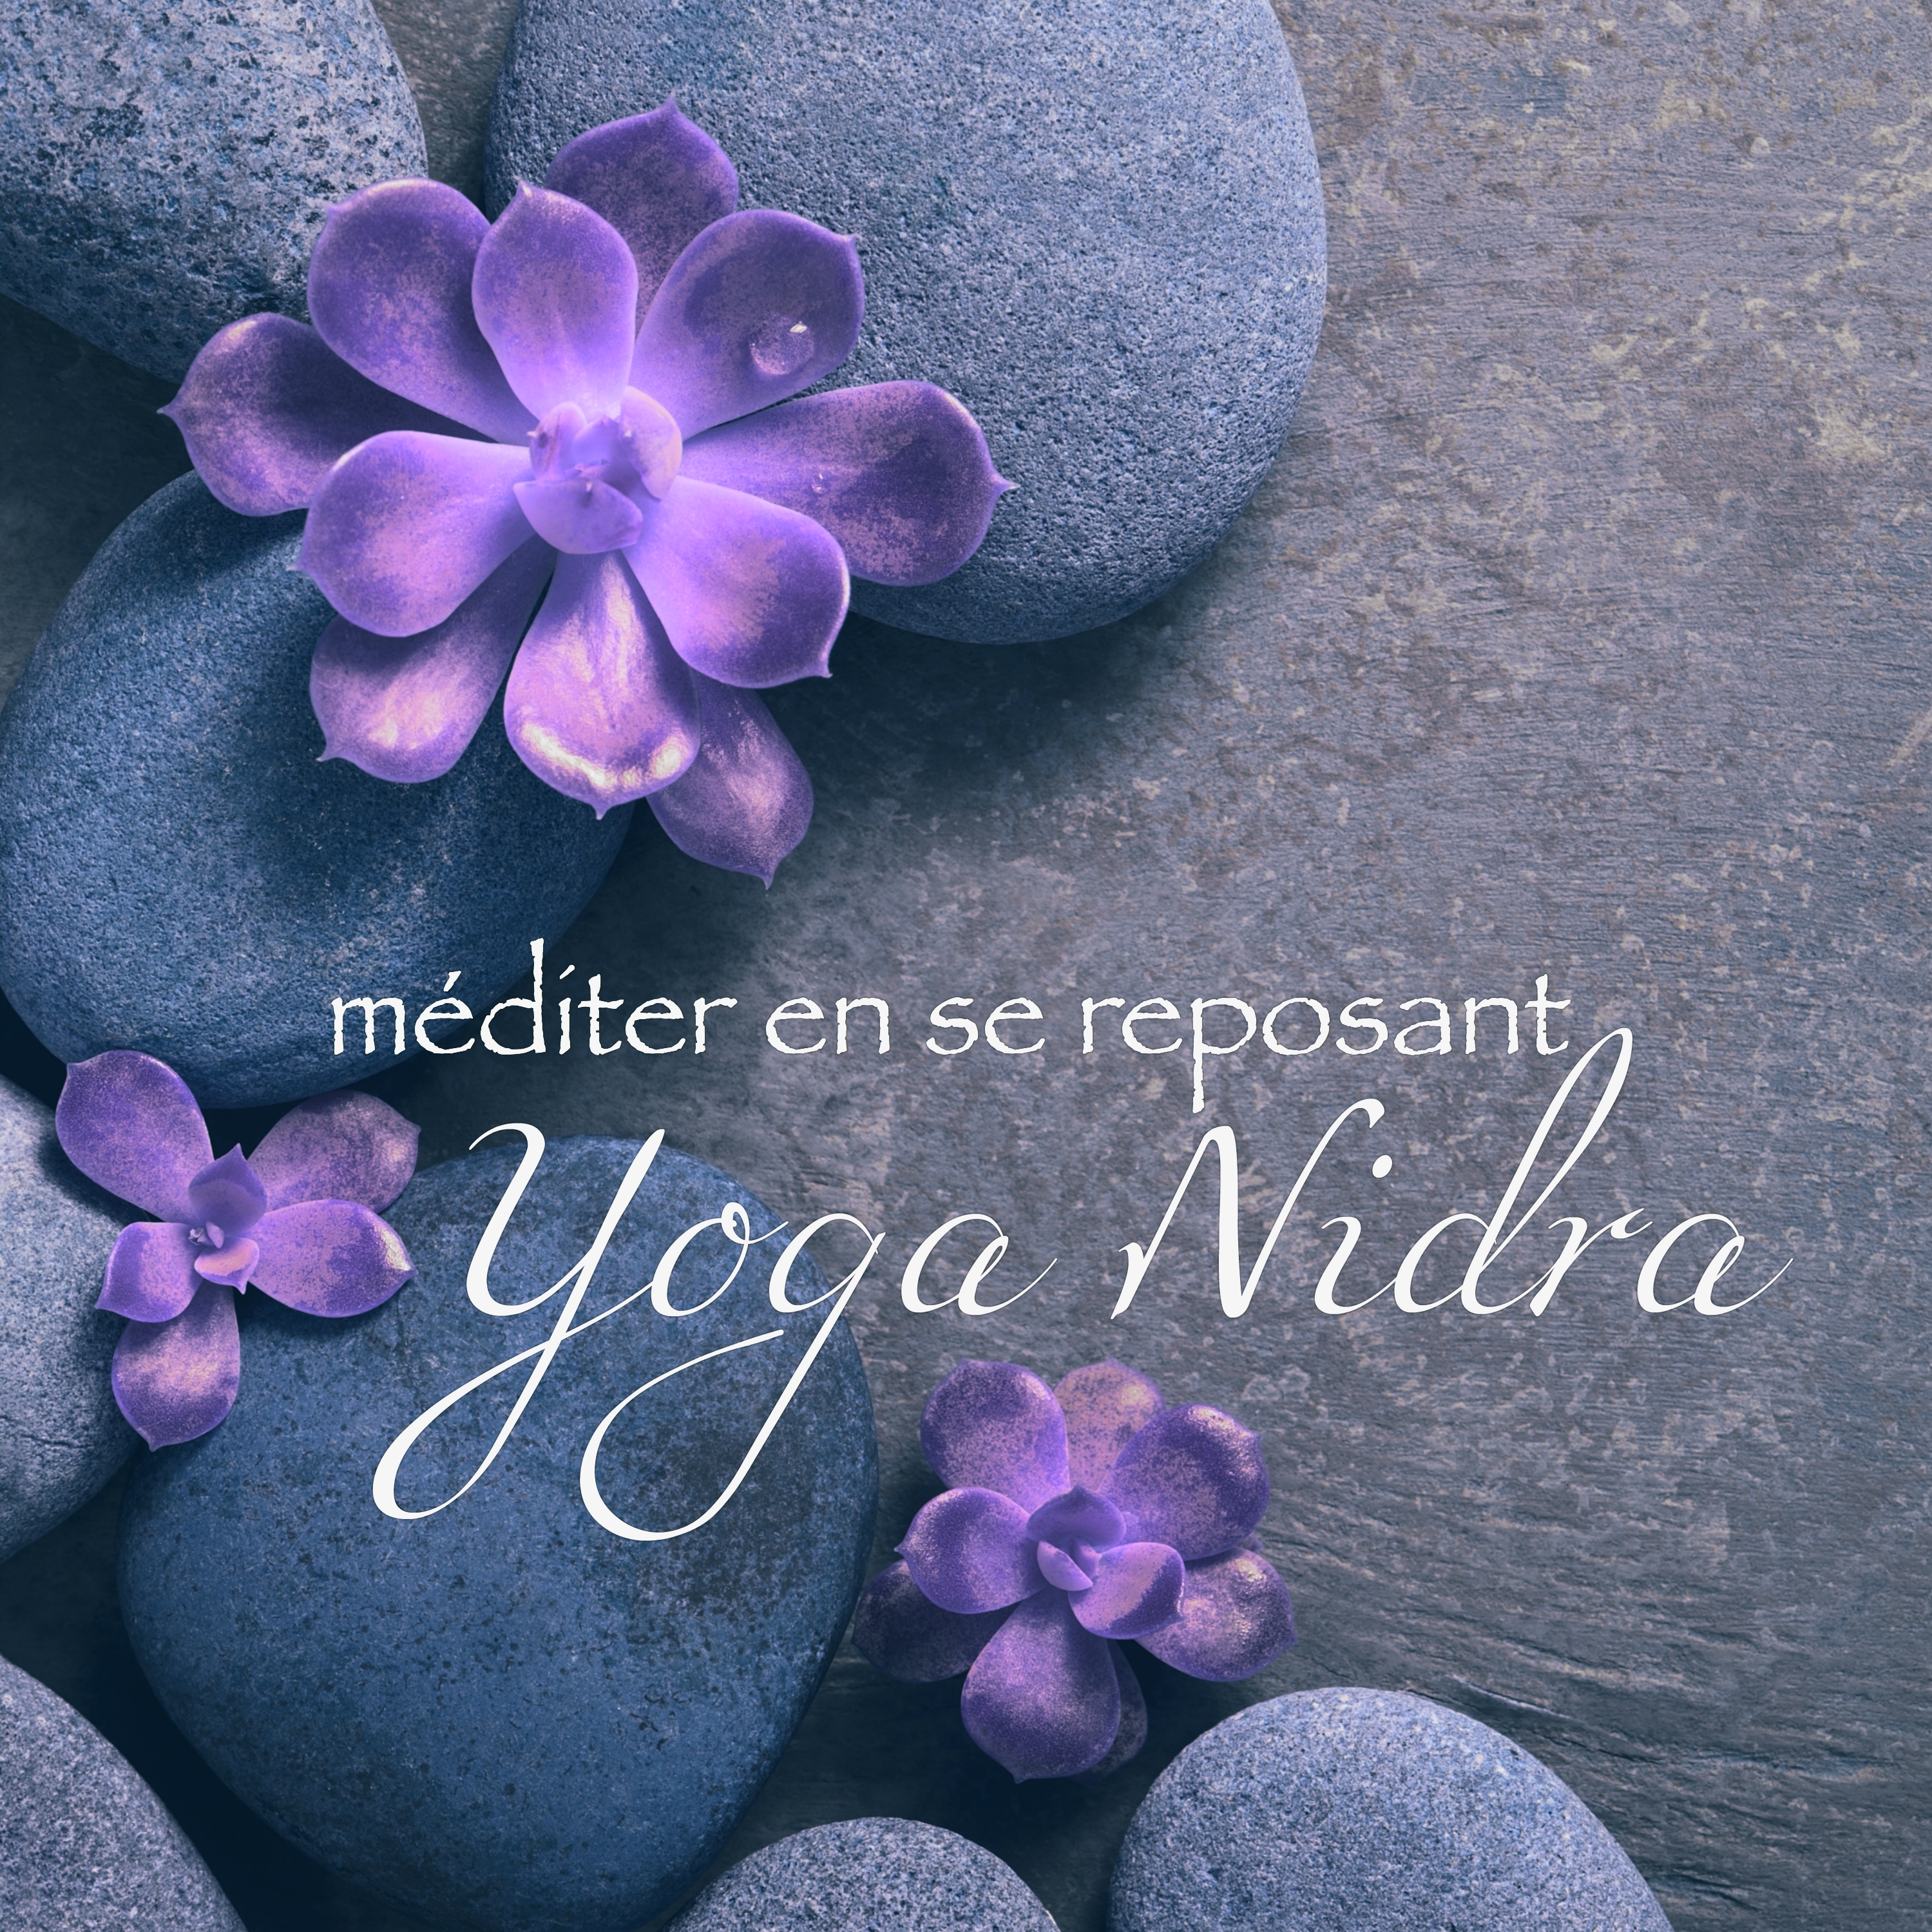 Yoga Nidra, méditer en se reposant – Musique d'ambiance très douce pour détente, relaxation profonde et l'éveil des sens